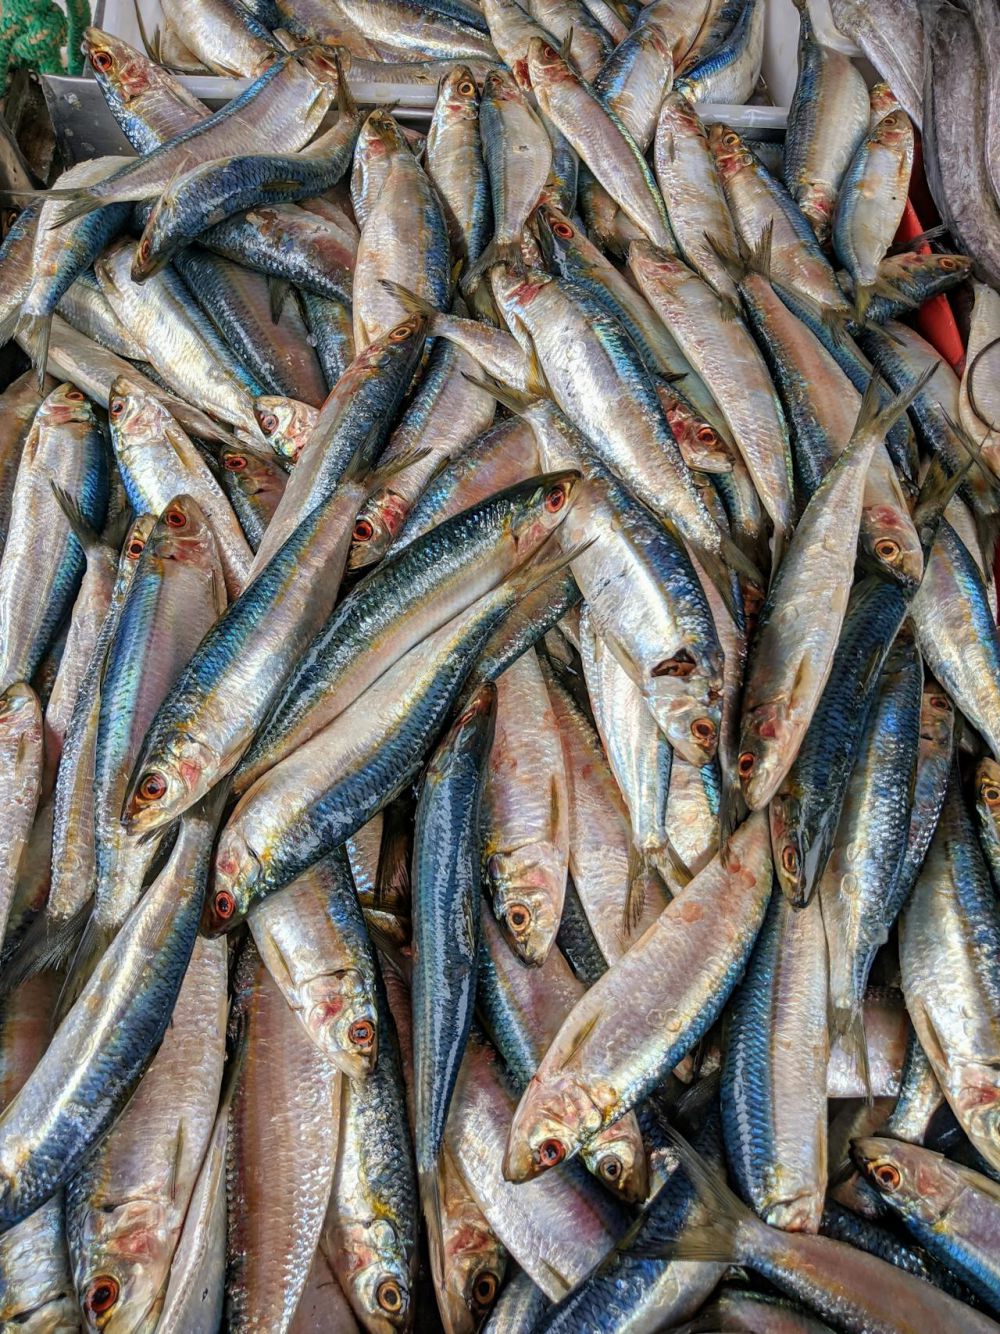 10 Jenis Ikan Laut Minim Duri yang Bisa Dimakan untuk Sahur, Gak Ribet